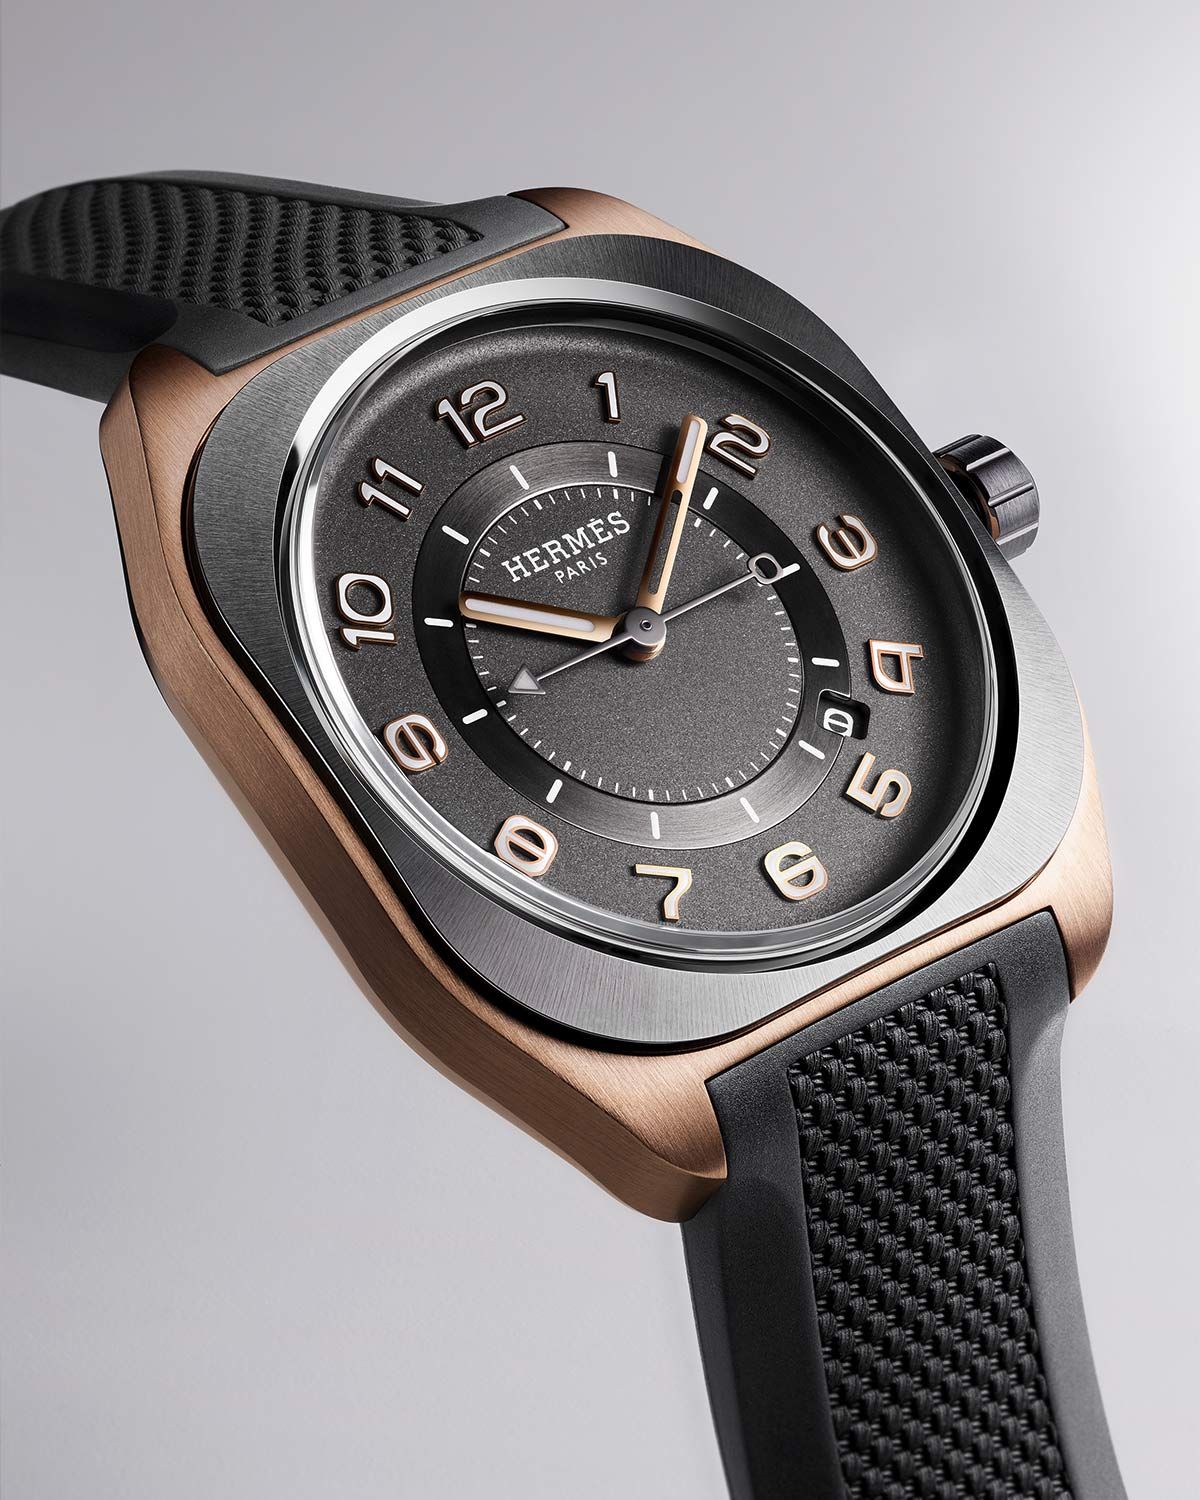 エルメス（Hermès）の腕時計「エルメス H08」グラスファイバー ...